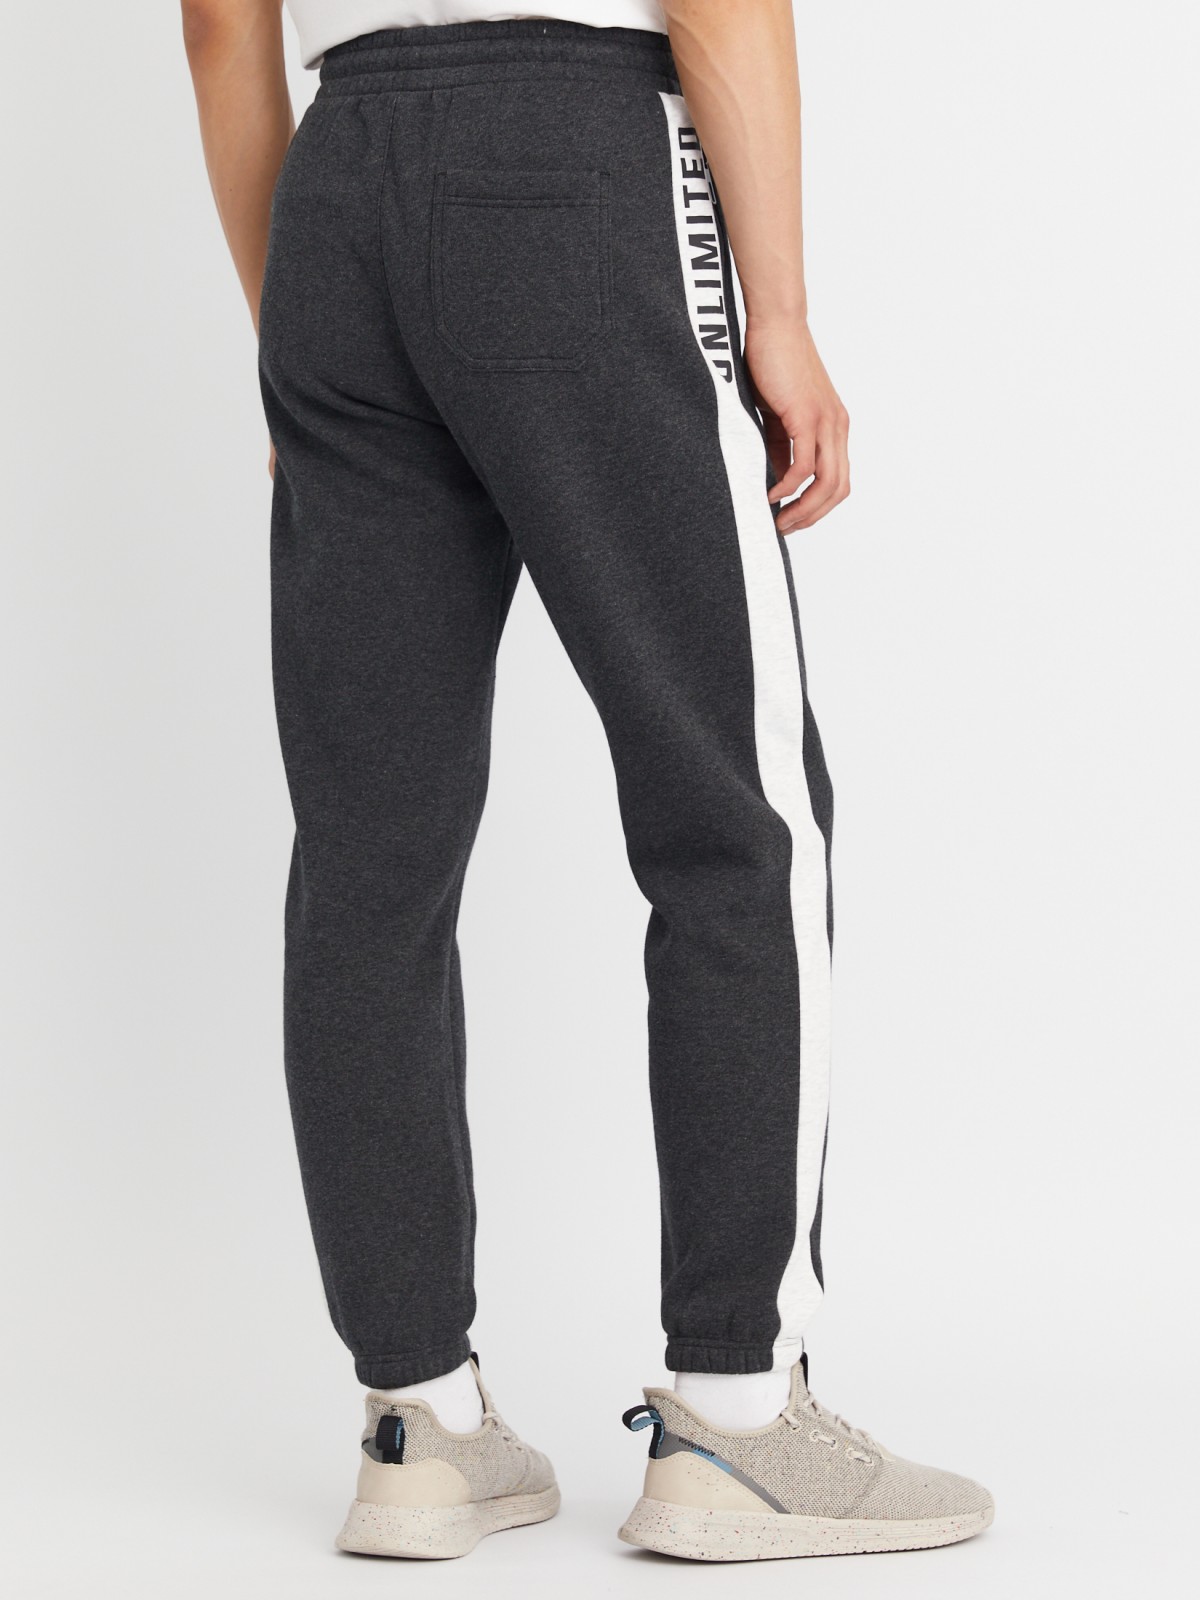 Утеплённые трикотажные брюки-джоггеры в спортивном стиле с лампасами zolla 213337660013, цвет темно-серый, размер M - фото 5